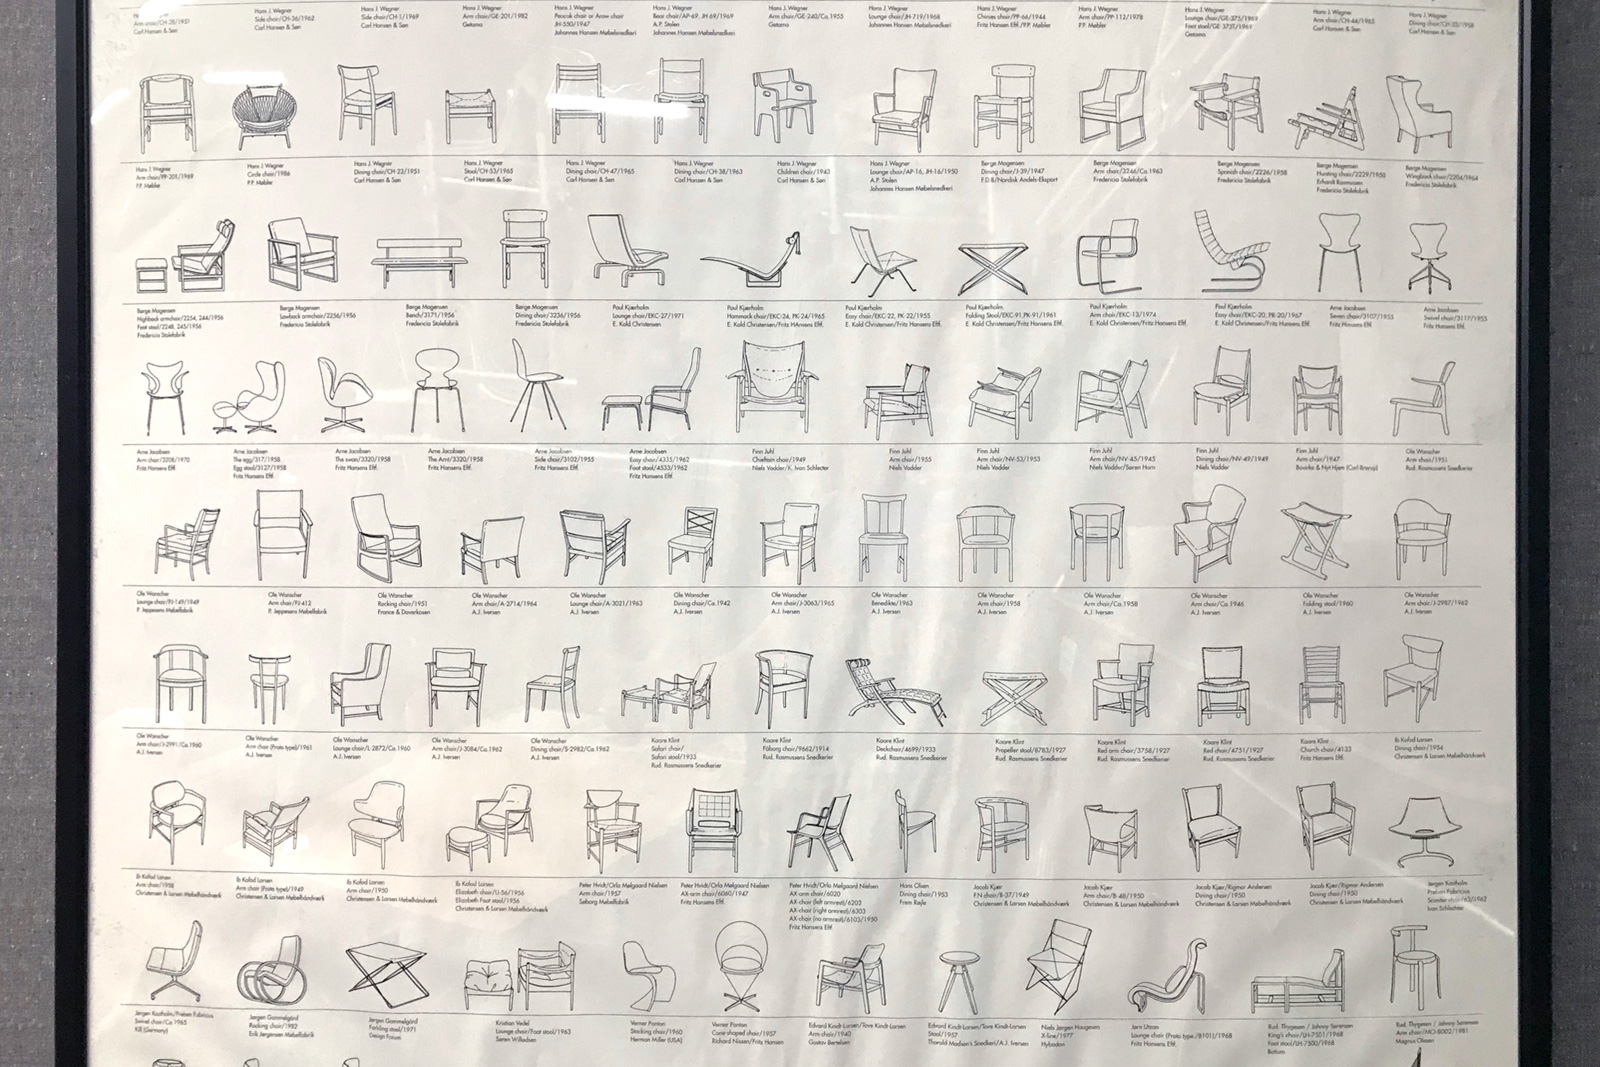 デンマーク 北欧 名作椅子のポスター Klassikオリジナル が1 000円 Ibukiya ブログ